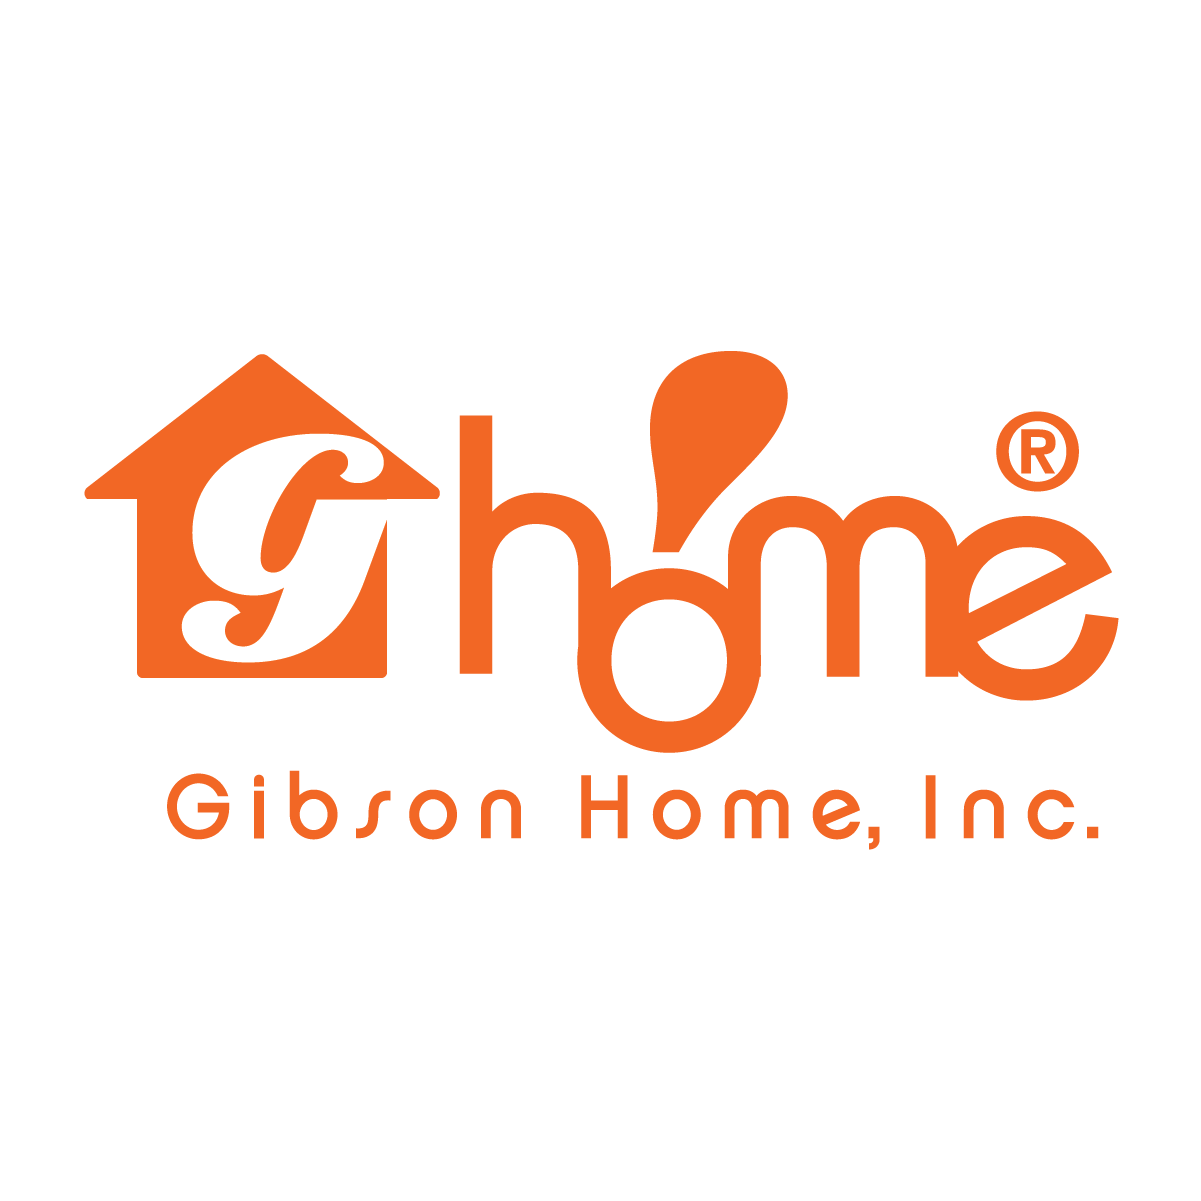 Gibson Home Logo